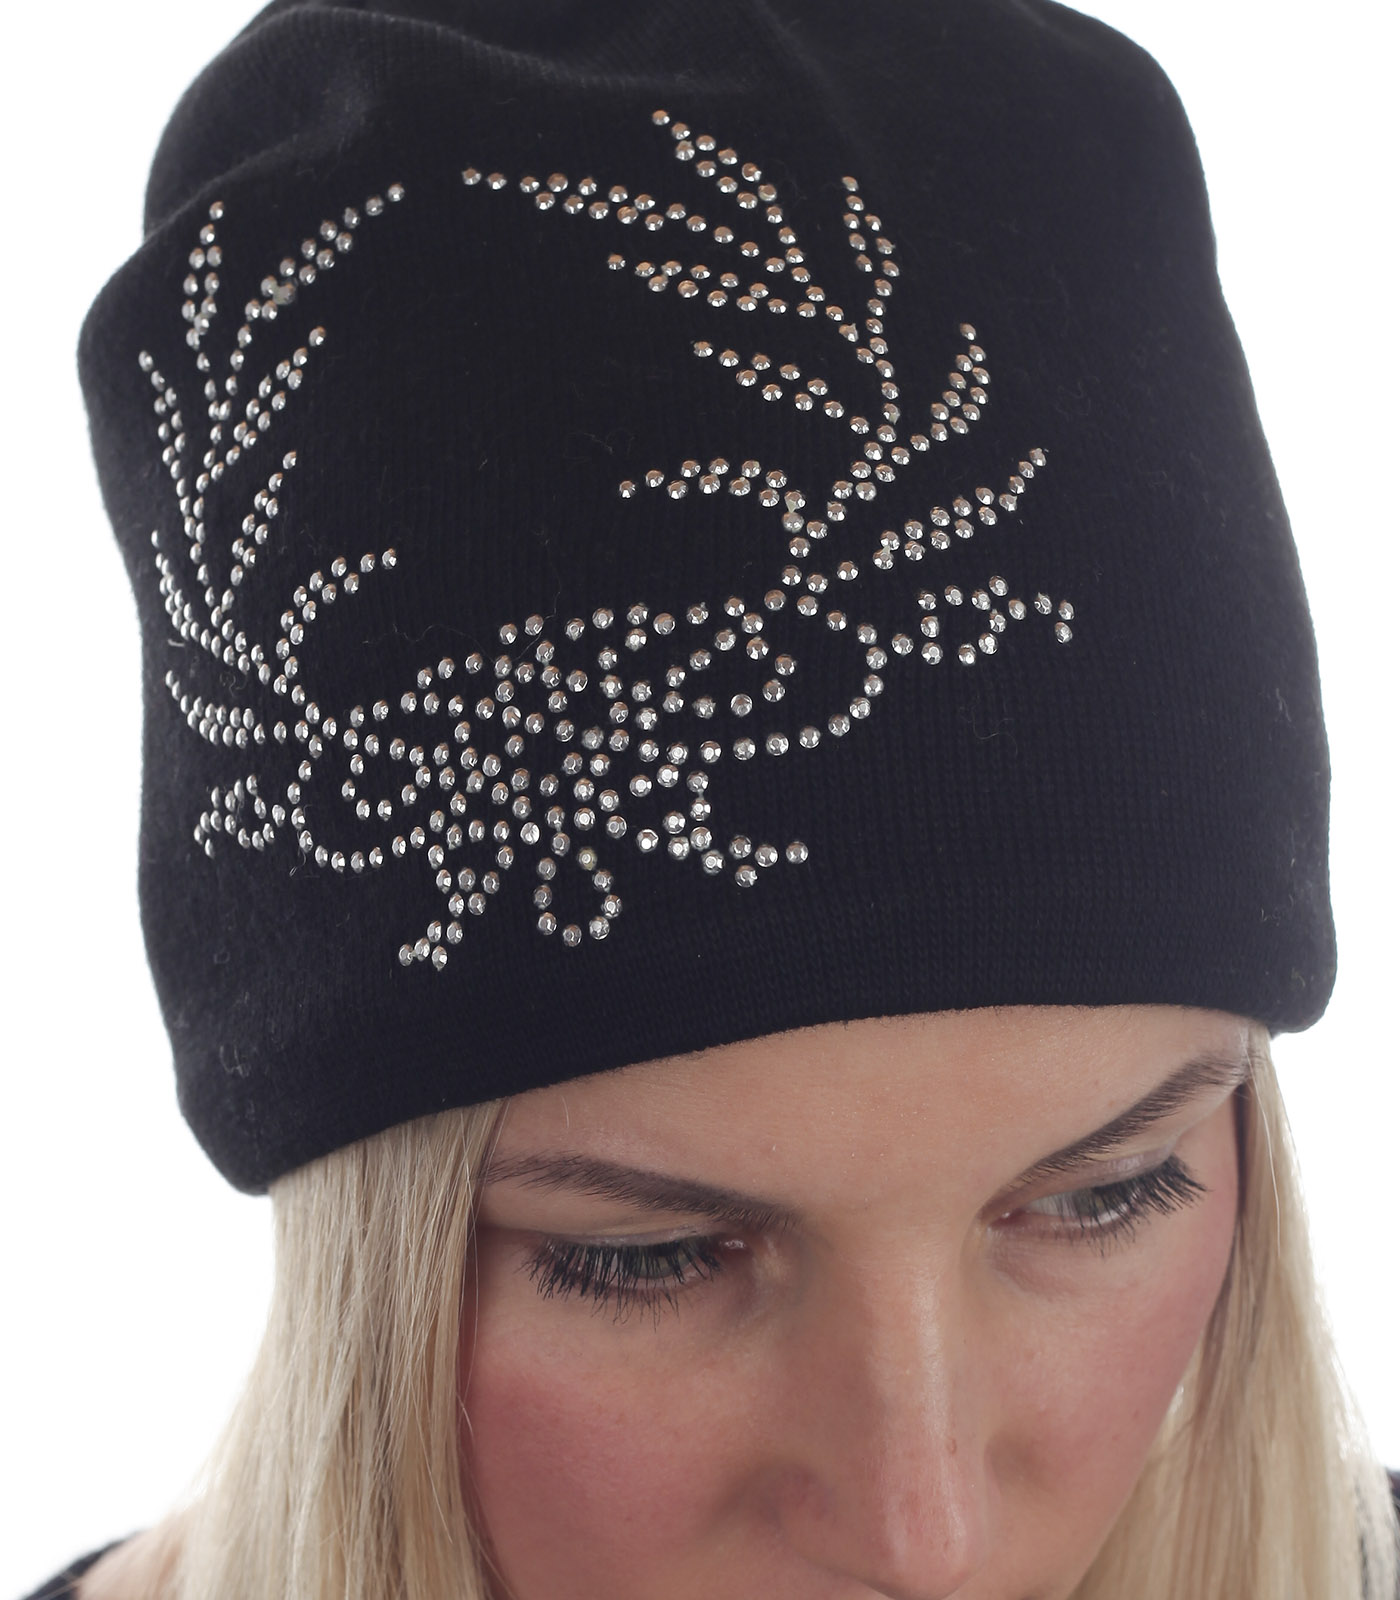 Купить в Москве стильную шапку для девушки